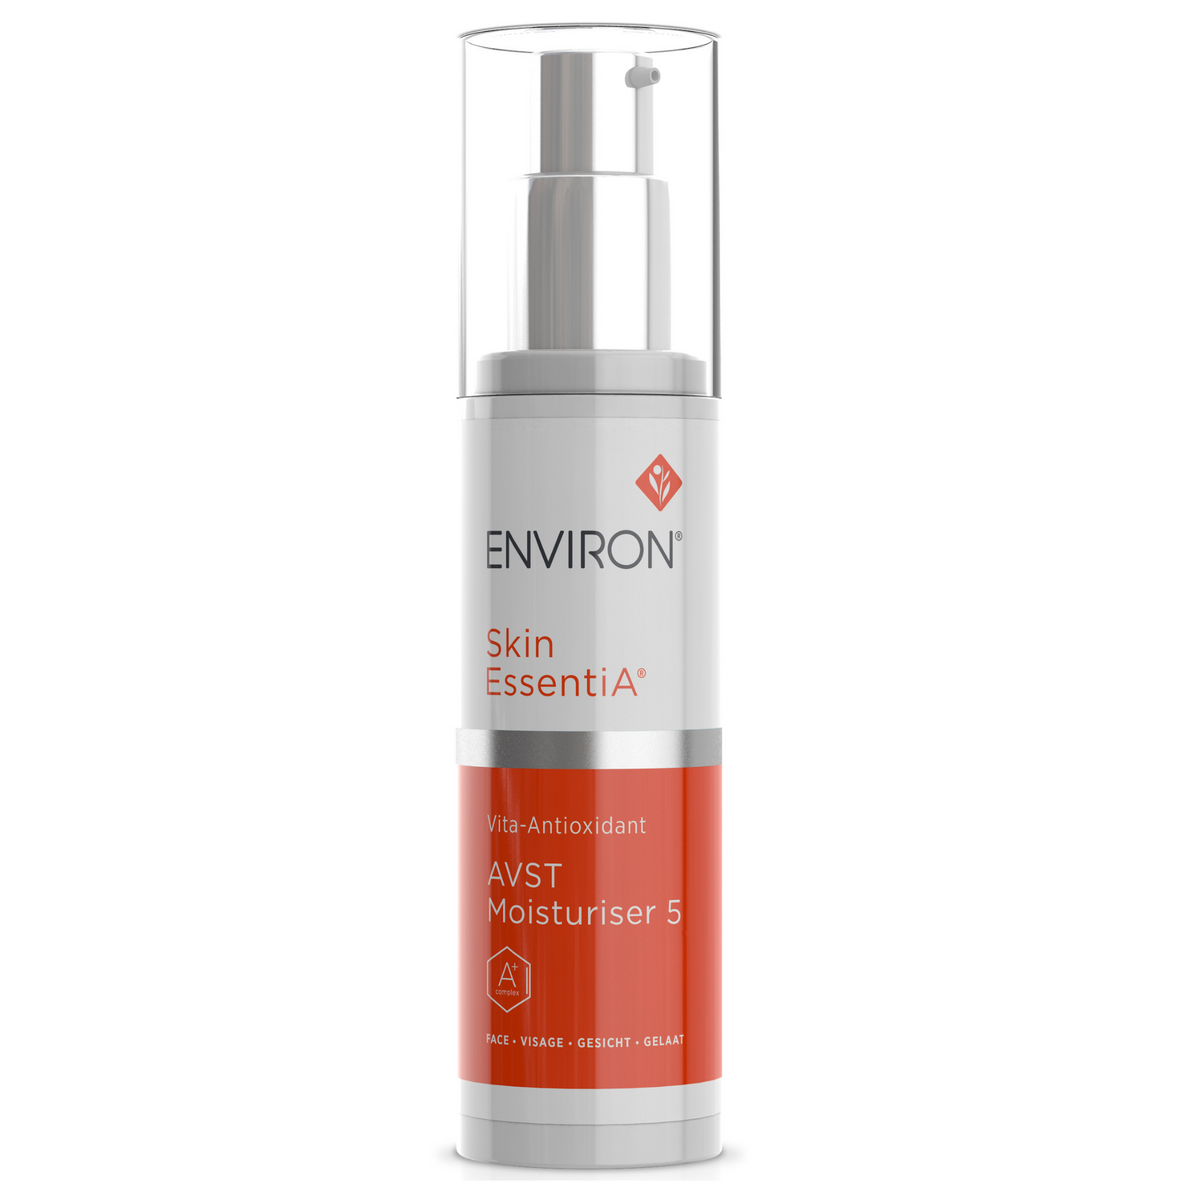 Environ - Vita-Antioxidant AVST Moisturiser 5 (50 ml) - Sarah Akram Skincare